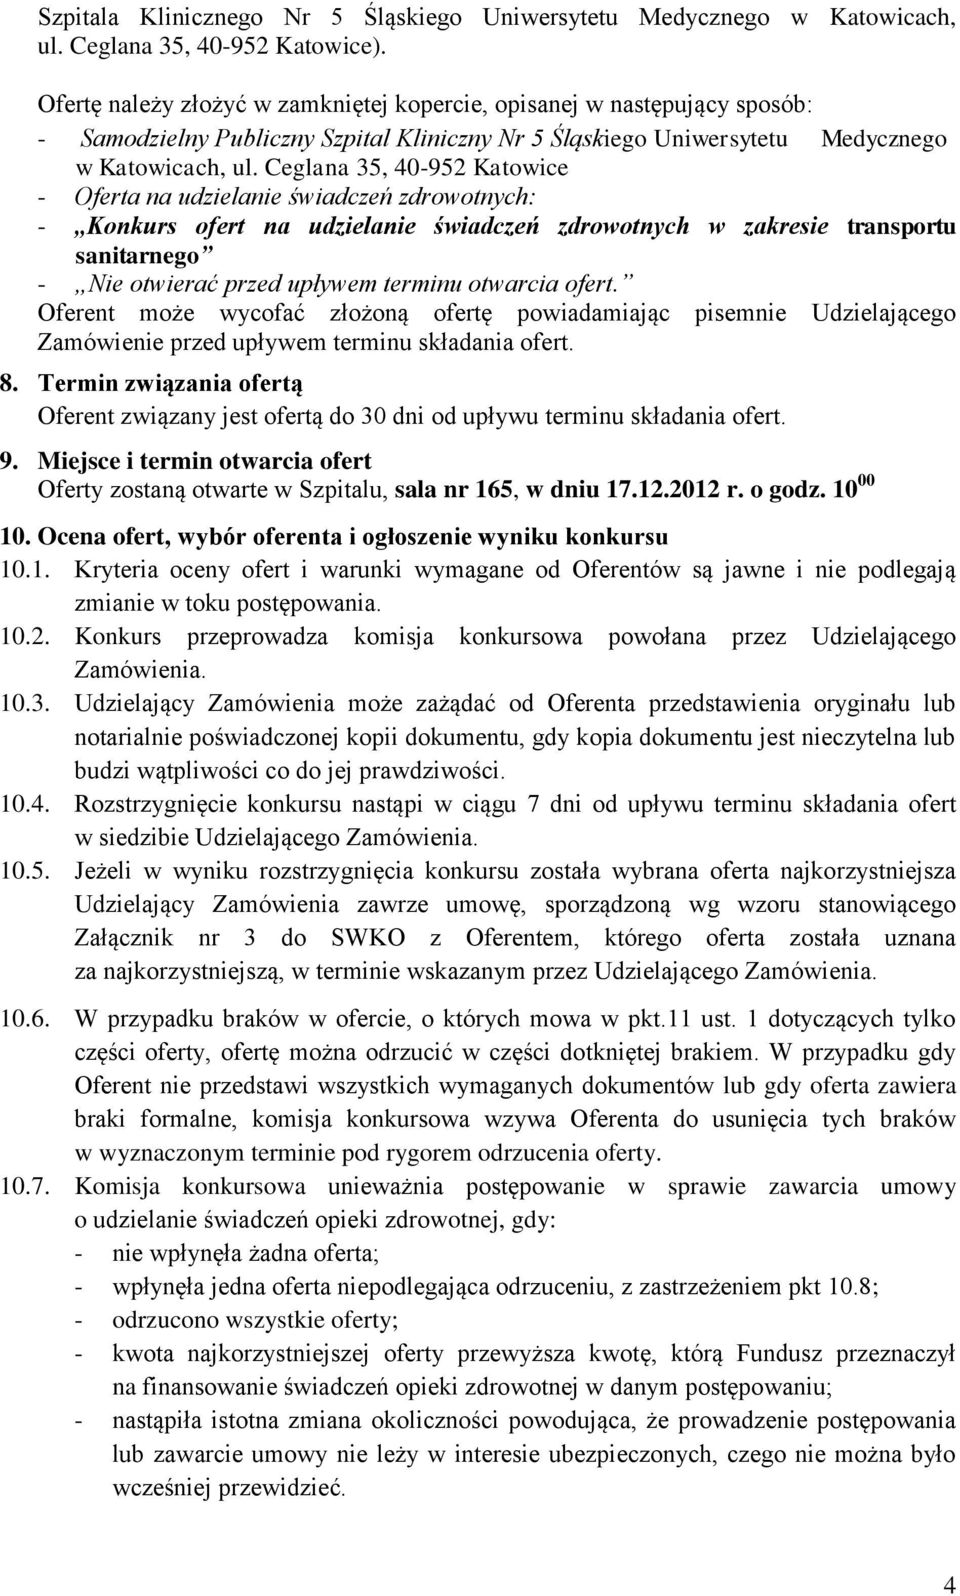 Ceglana 35, 40-952 Katowice - Oferta na udzielanie świadczeń zdrowotnych: - Konkurs ofert na udzielanie świadczeń zdrowotnych w zakresie transportu sanitarnego - Nie otwierać przed upływem terminu